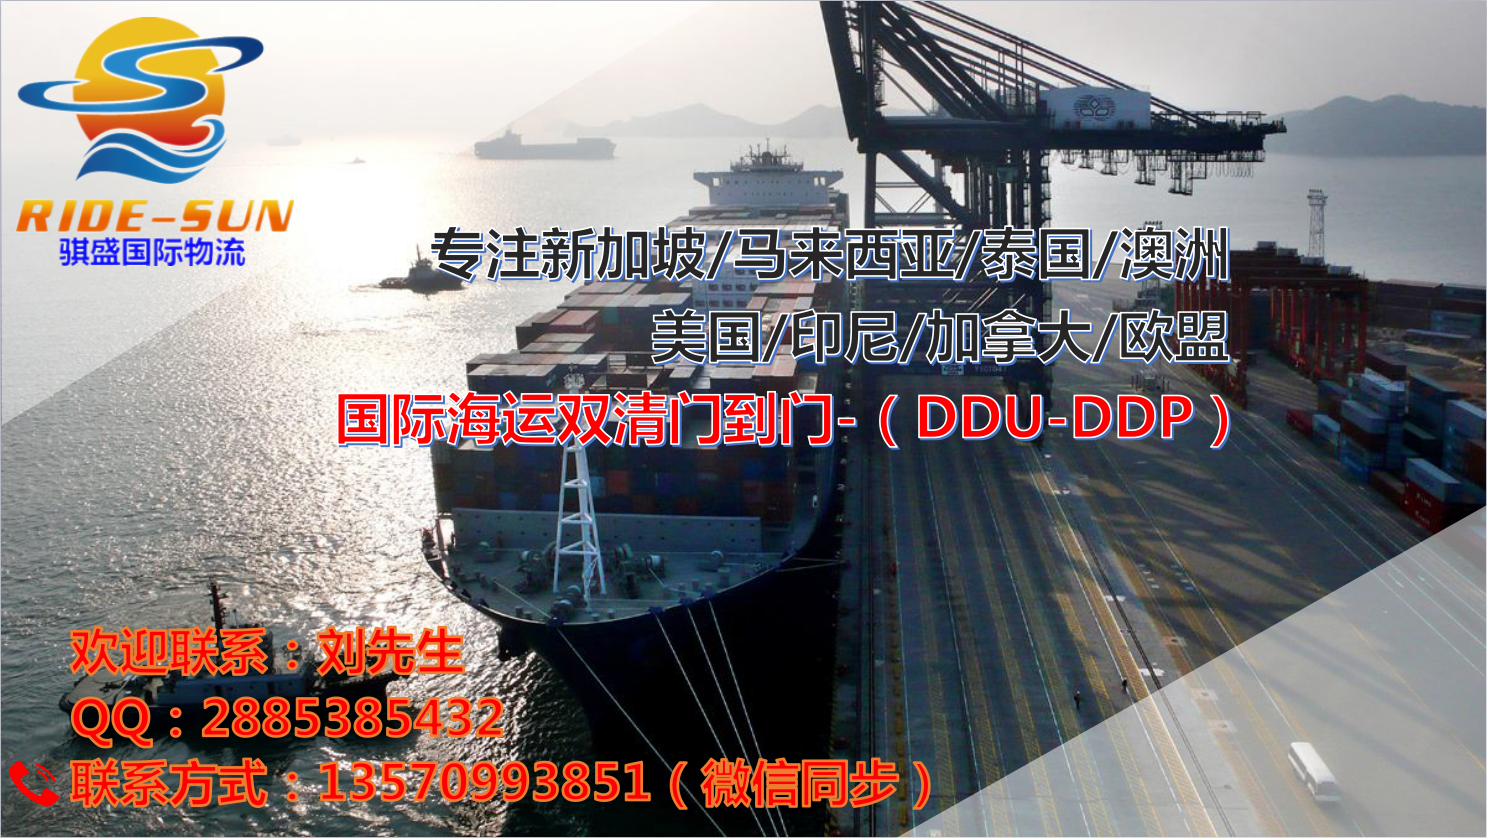 中国至迪拜海运双清门到门全包专线 搬家移民-广州到迪拜海运费图片